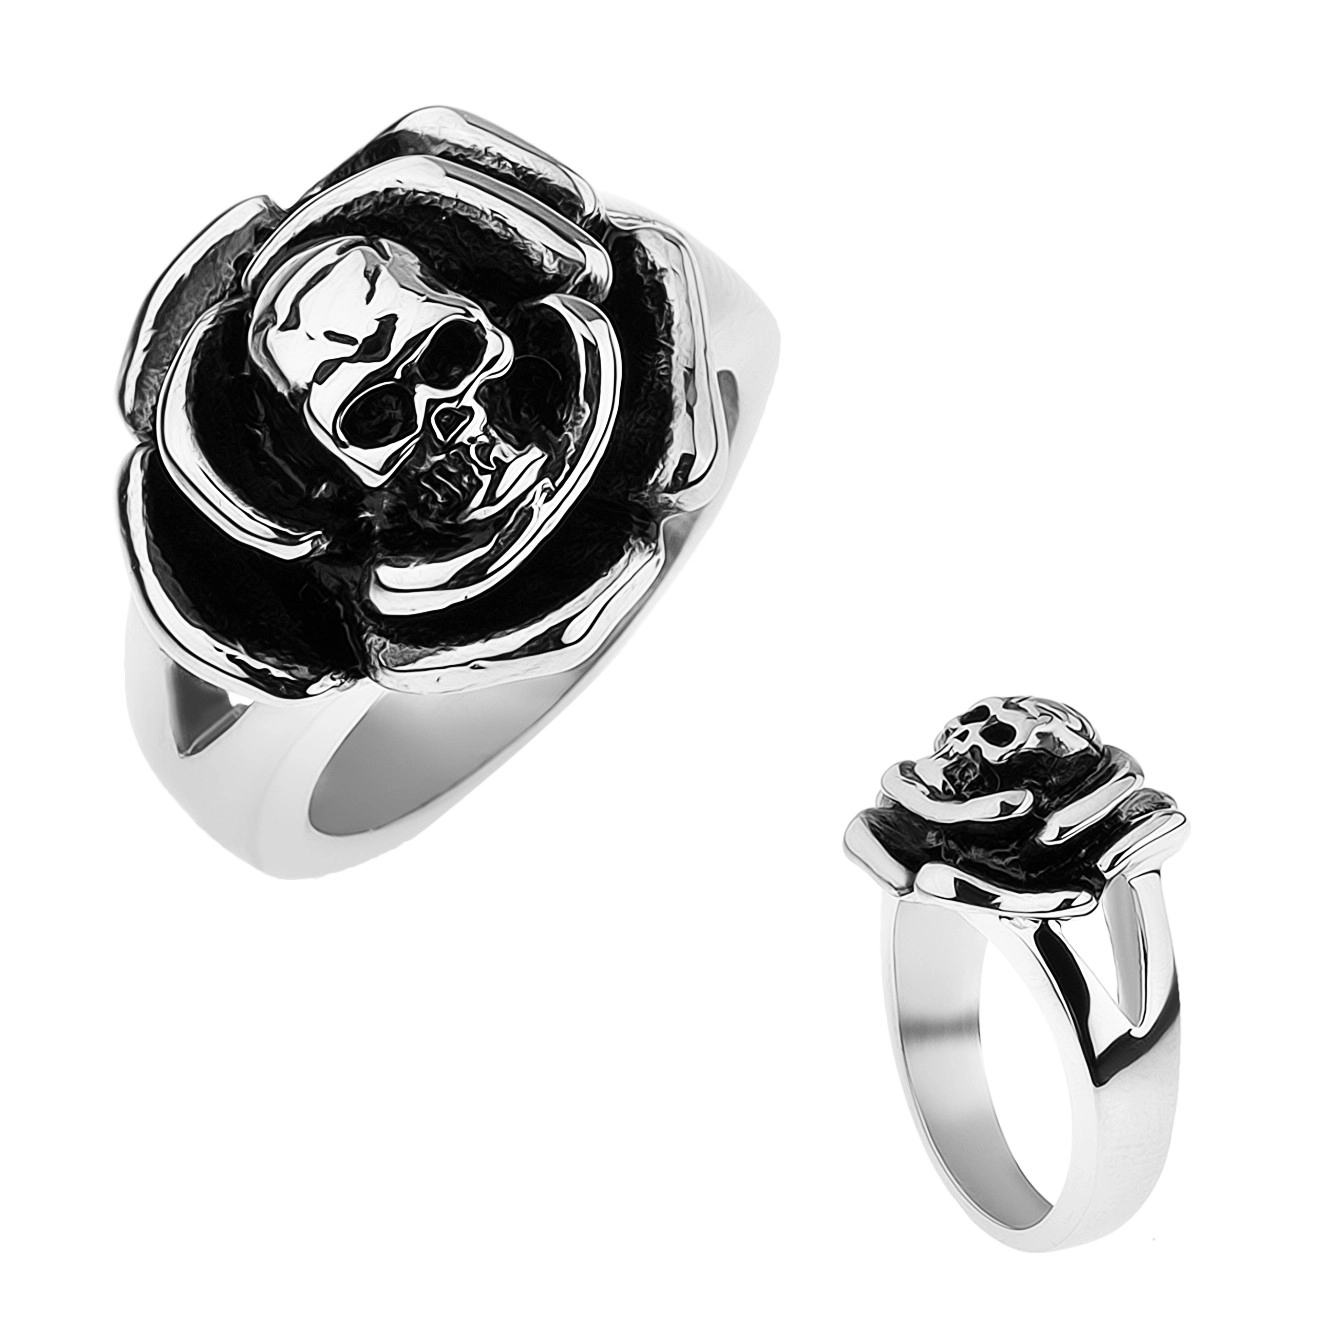 Patinovaný oceľový prsteň, ruža s lebkou v strede, rozdvojené ramená - Veľkosť: 65 mm